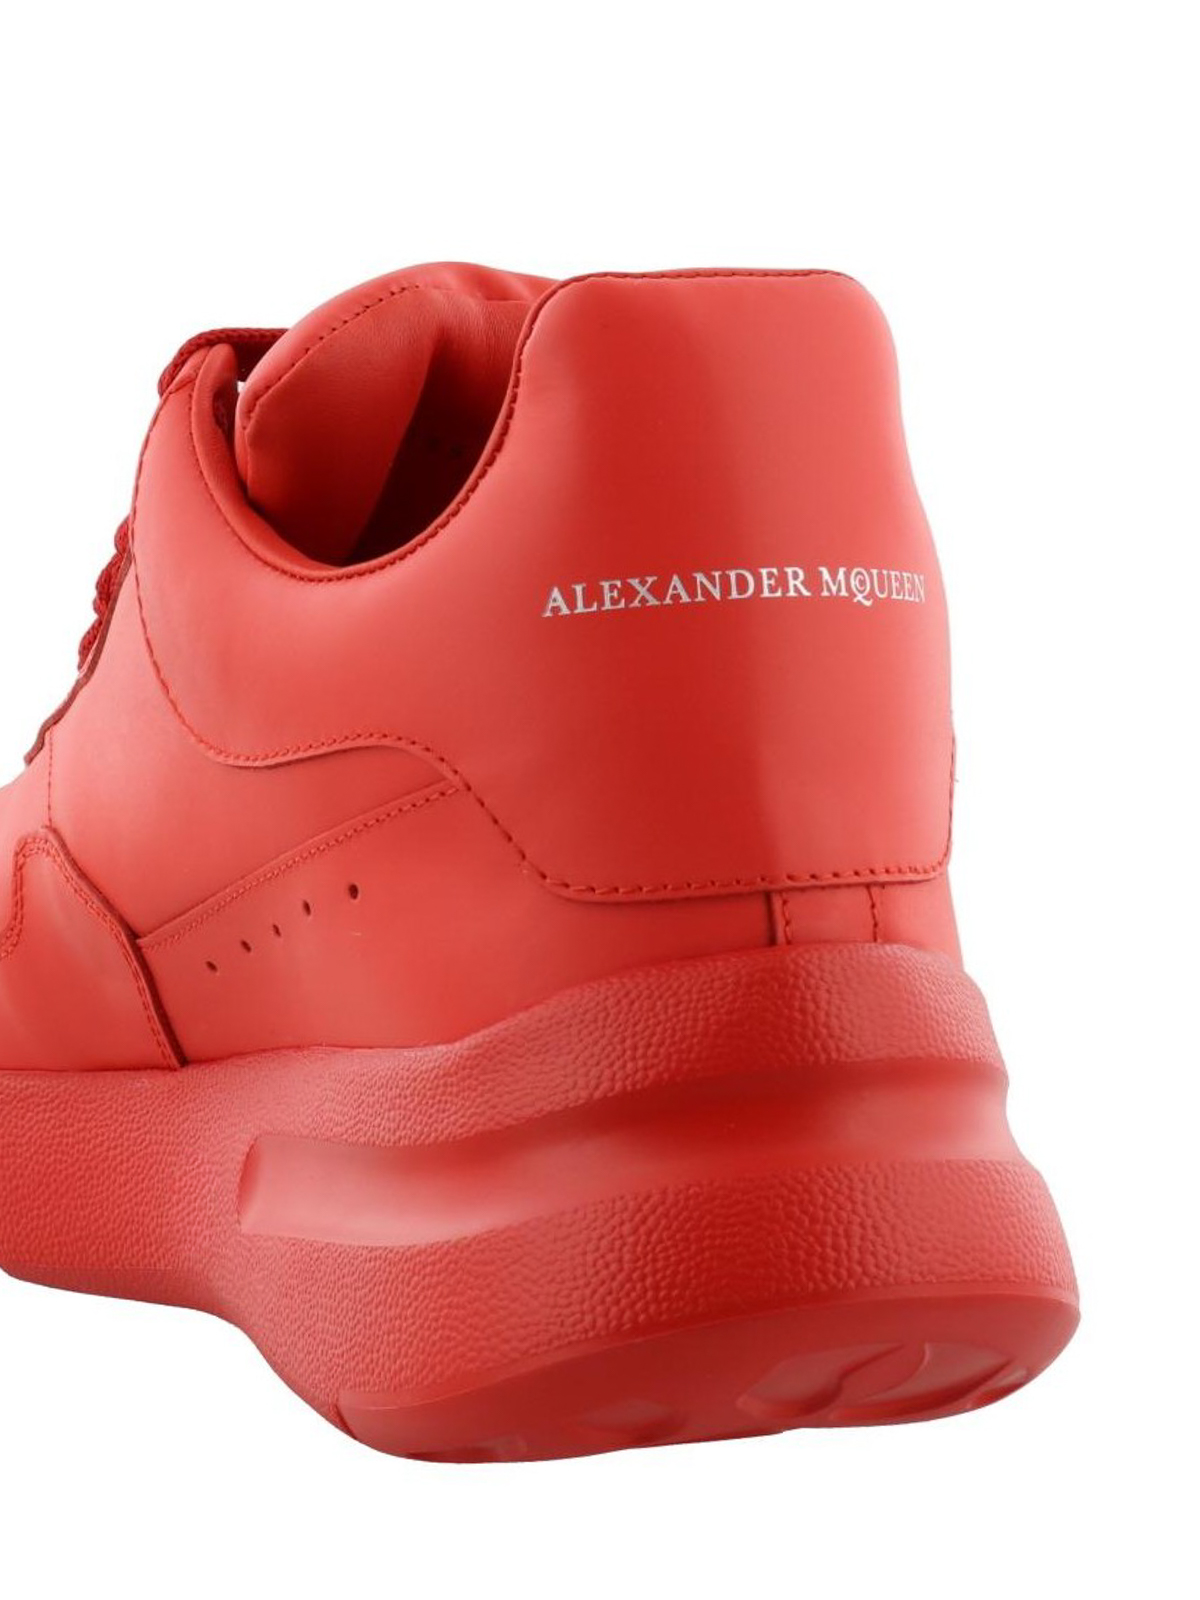 alexander mcqueen sneakers shop online